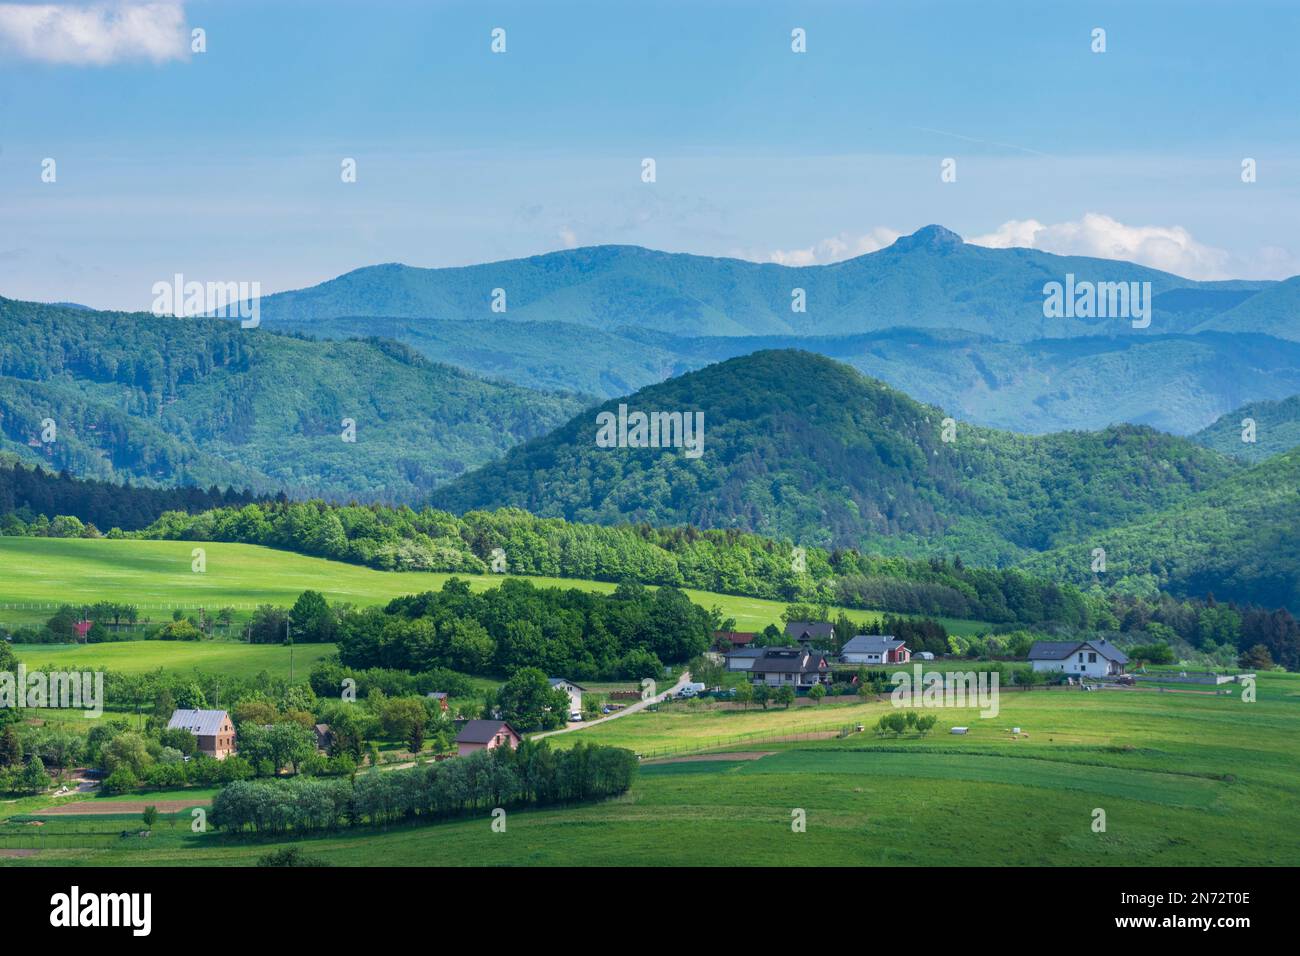 Strazovske vrchy (Strazov Mountains), Strazovske vrchy (Strazov Mountains), village in Slovakia Stock Photo